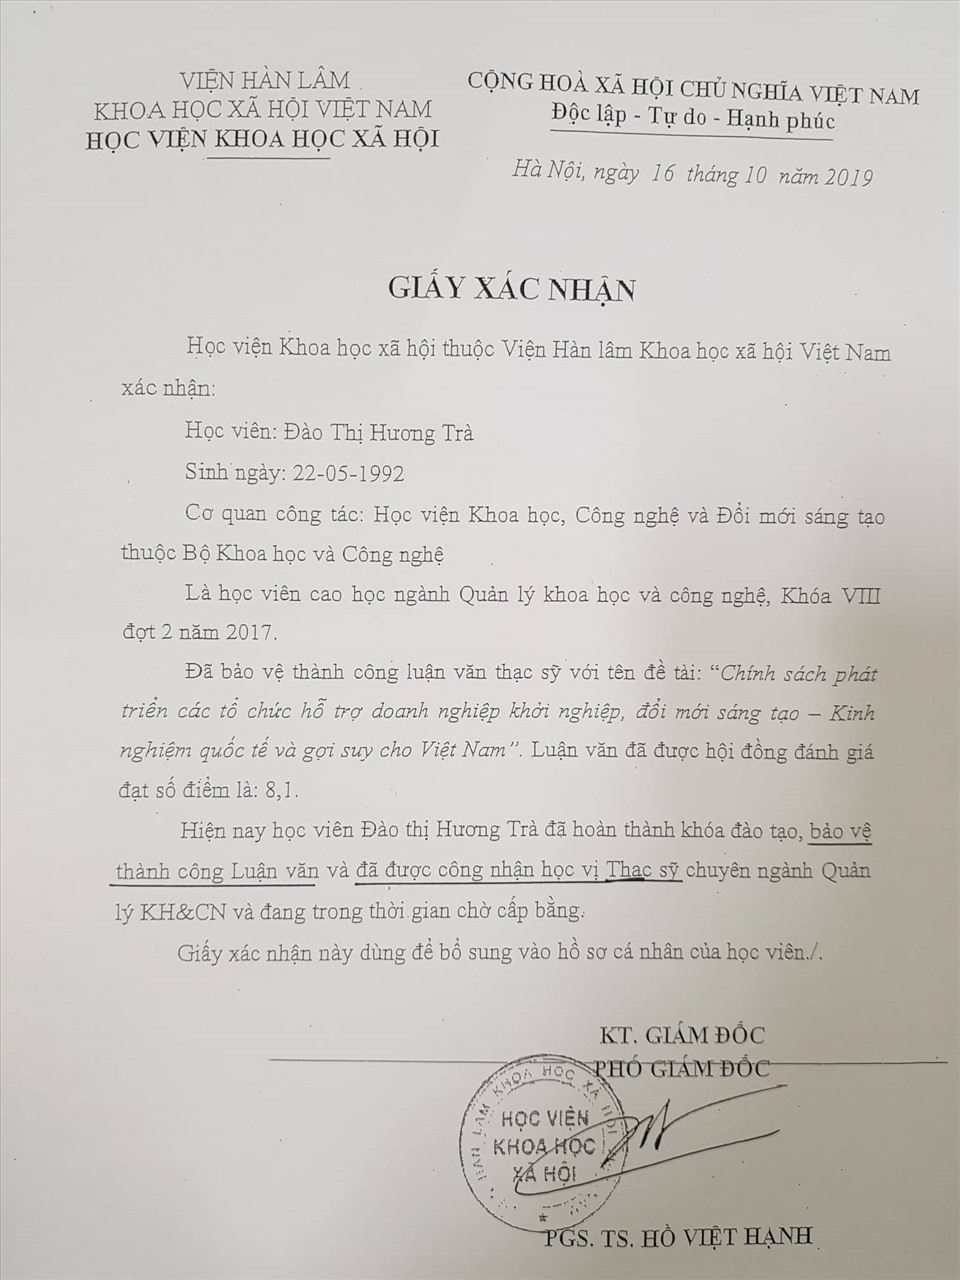 Ngày 16.10.2019, Học viện Khoa học Xã hội đã xác nhận bà Đào Thị Hương Trà đã được công nhận học vị Thạc sĩ song thực tế ngày 11.11.2019 bà Trà mới được cấp bằng. Ảnh: D.T